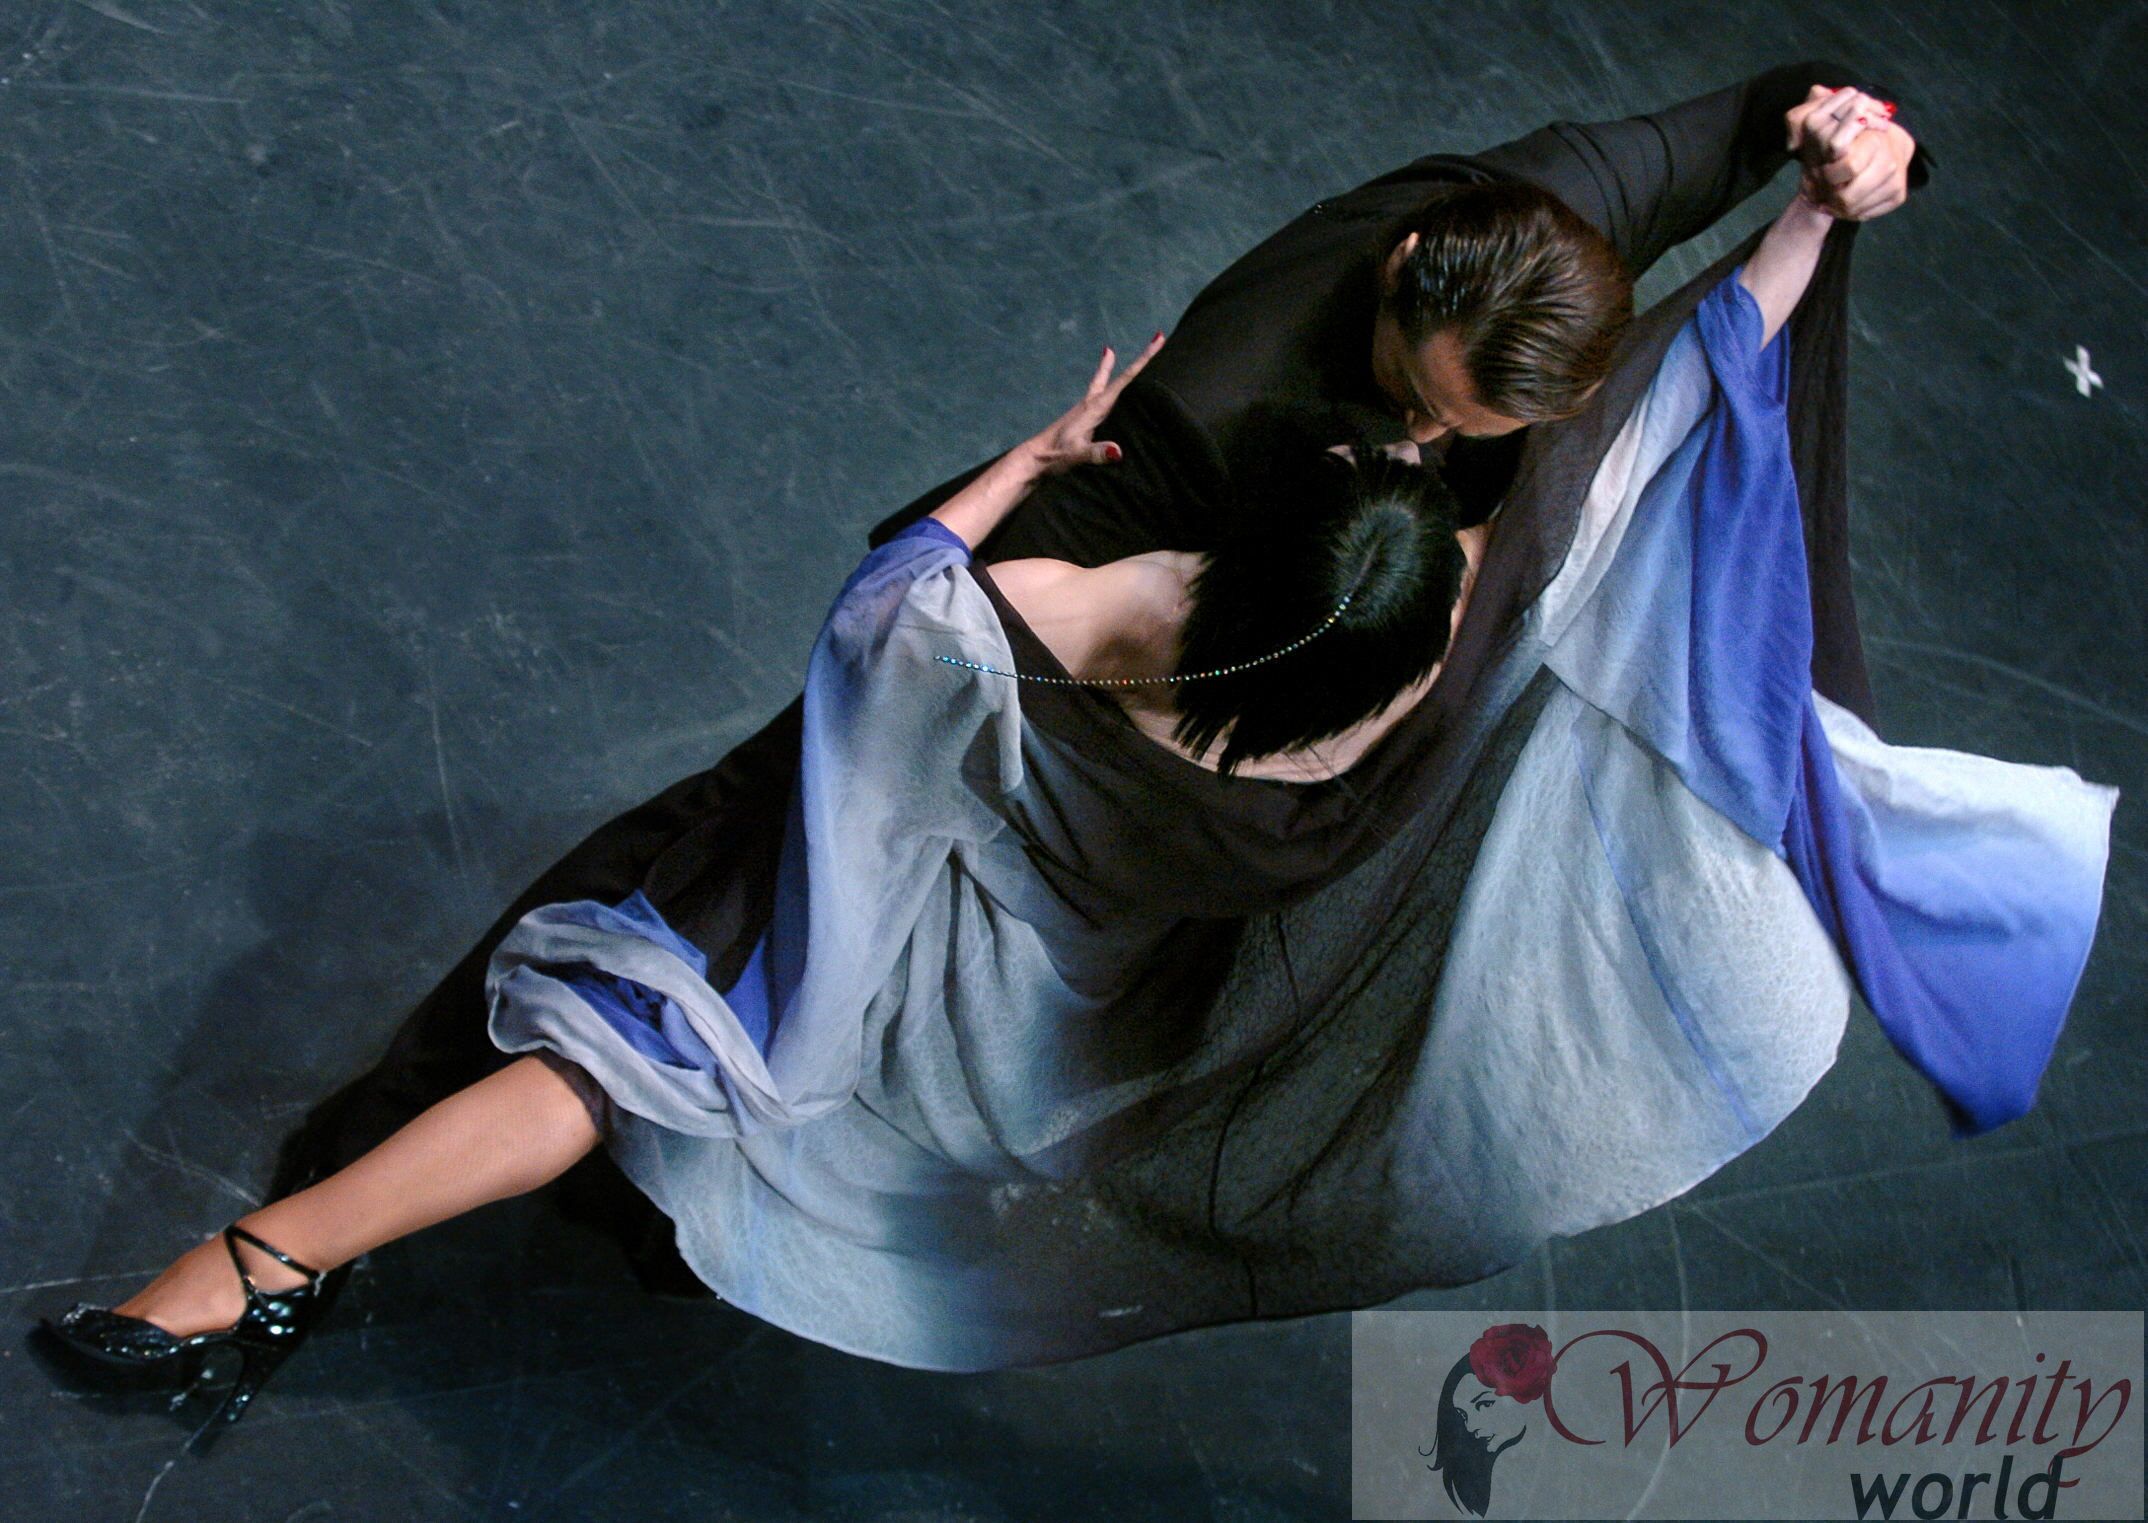 Tanzen verbessert die körperliche, geistige und emotionale Gesundheit.